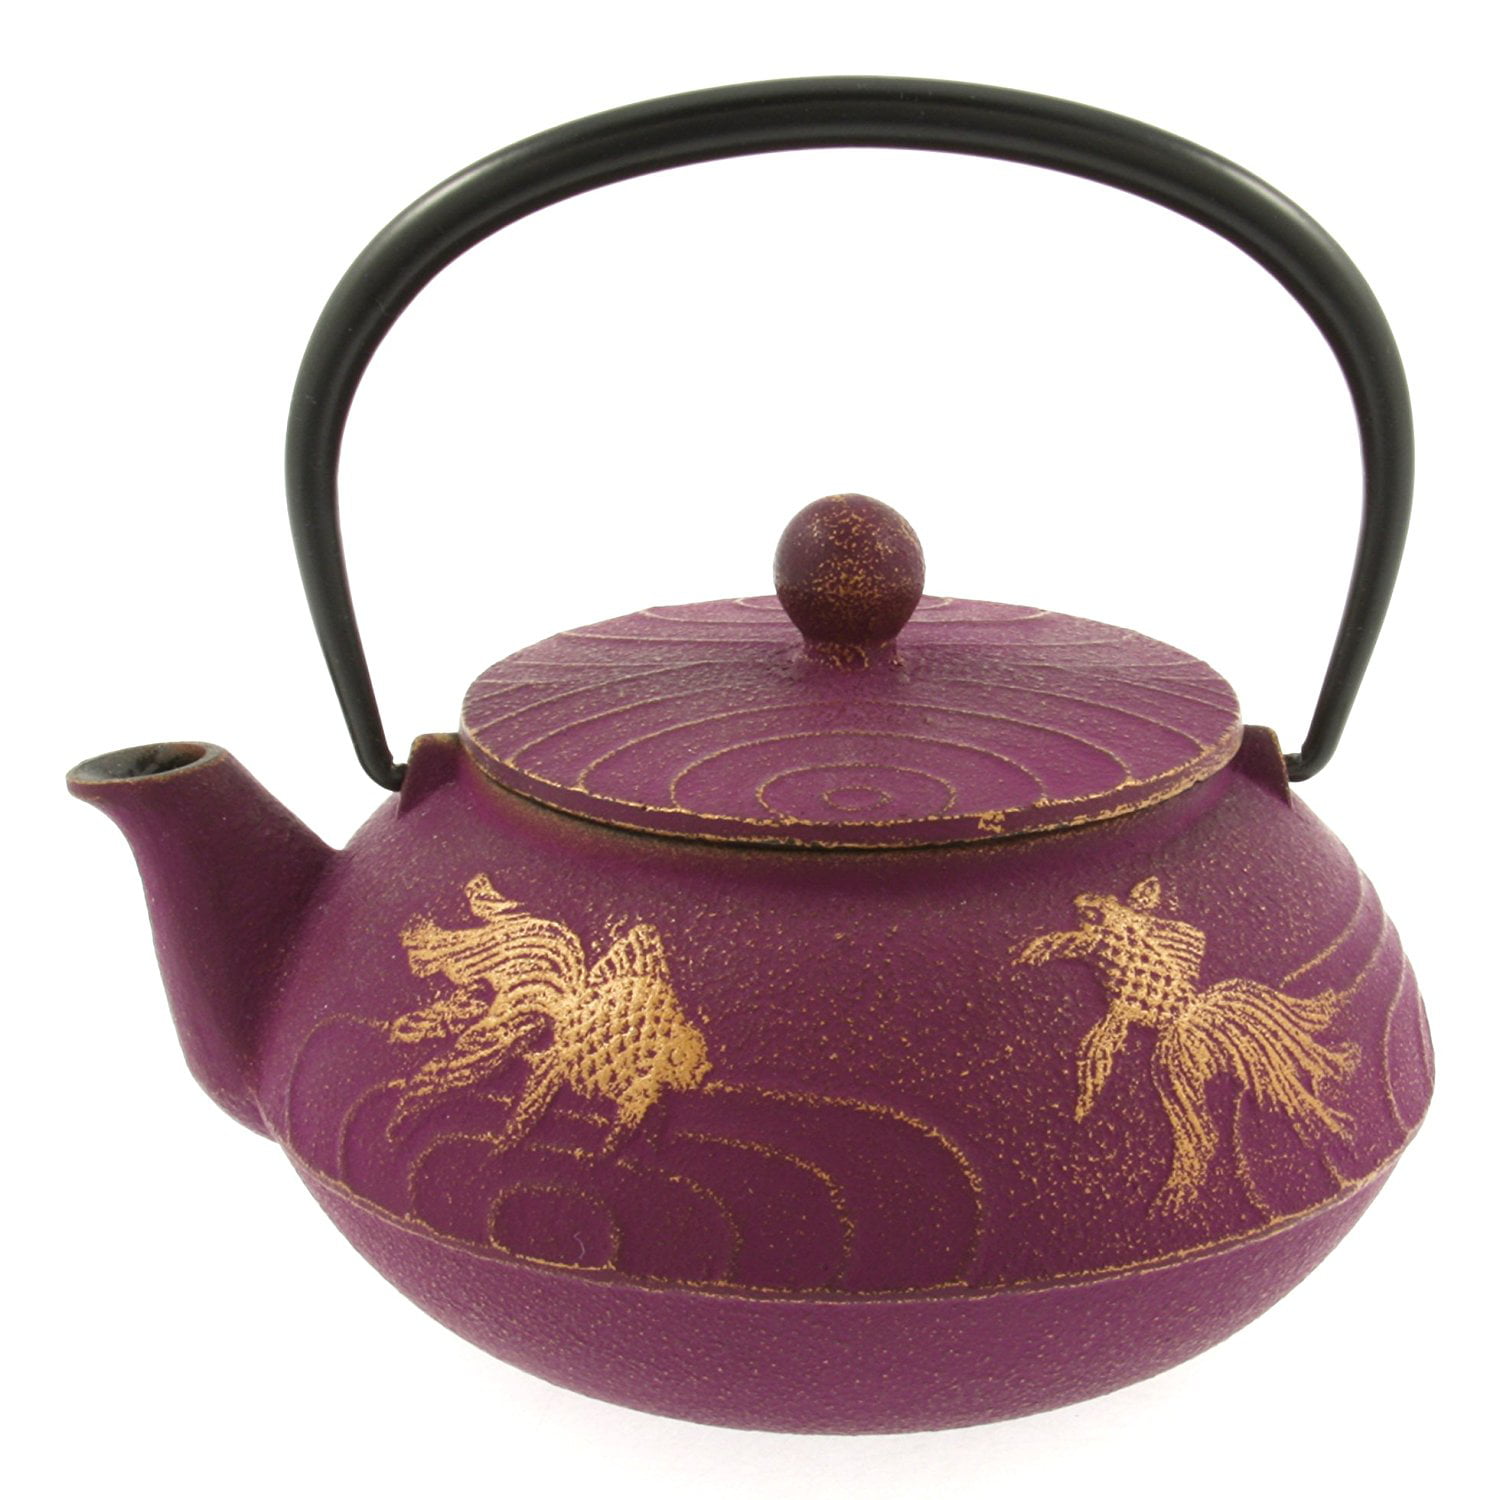 Iwachu Japanese Iron Teapot Tetsubin Gold and Purple Goldfish